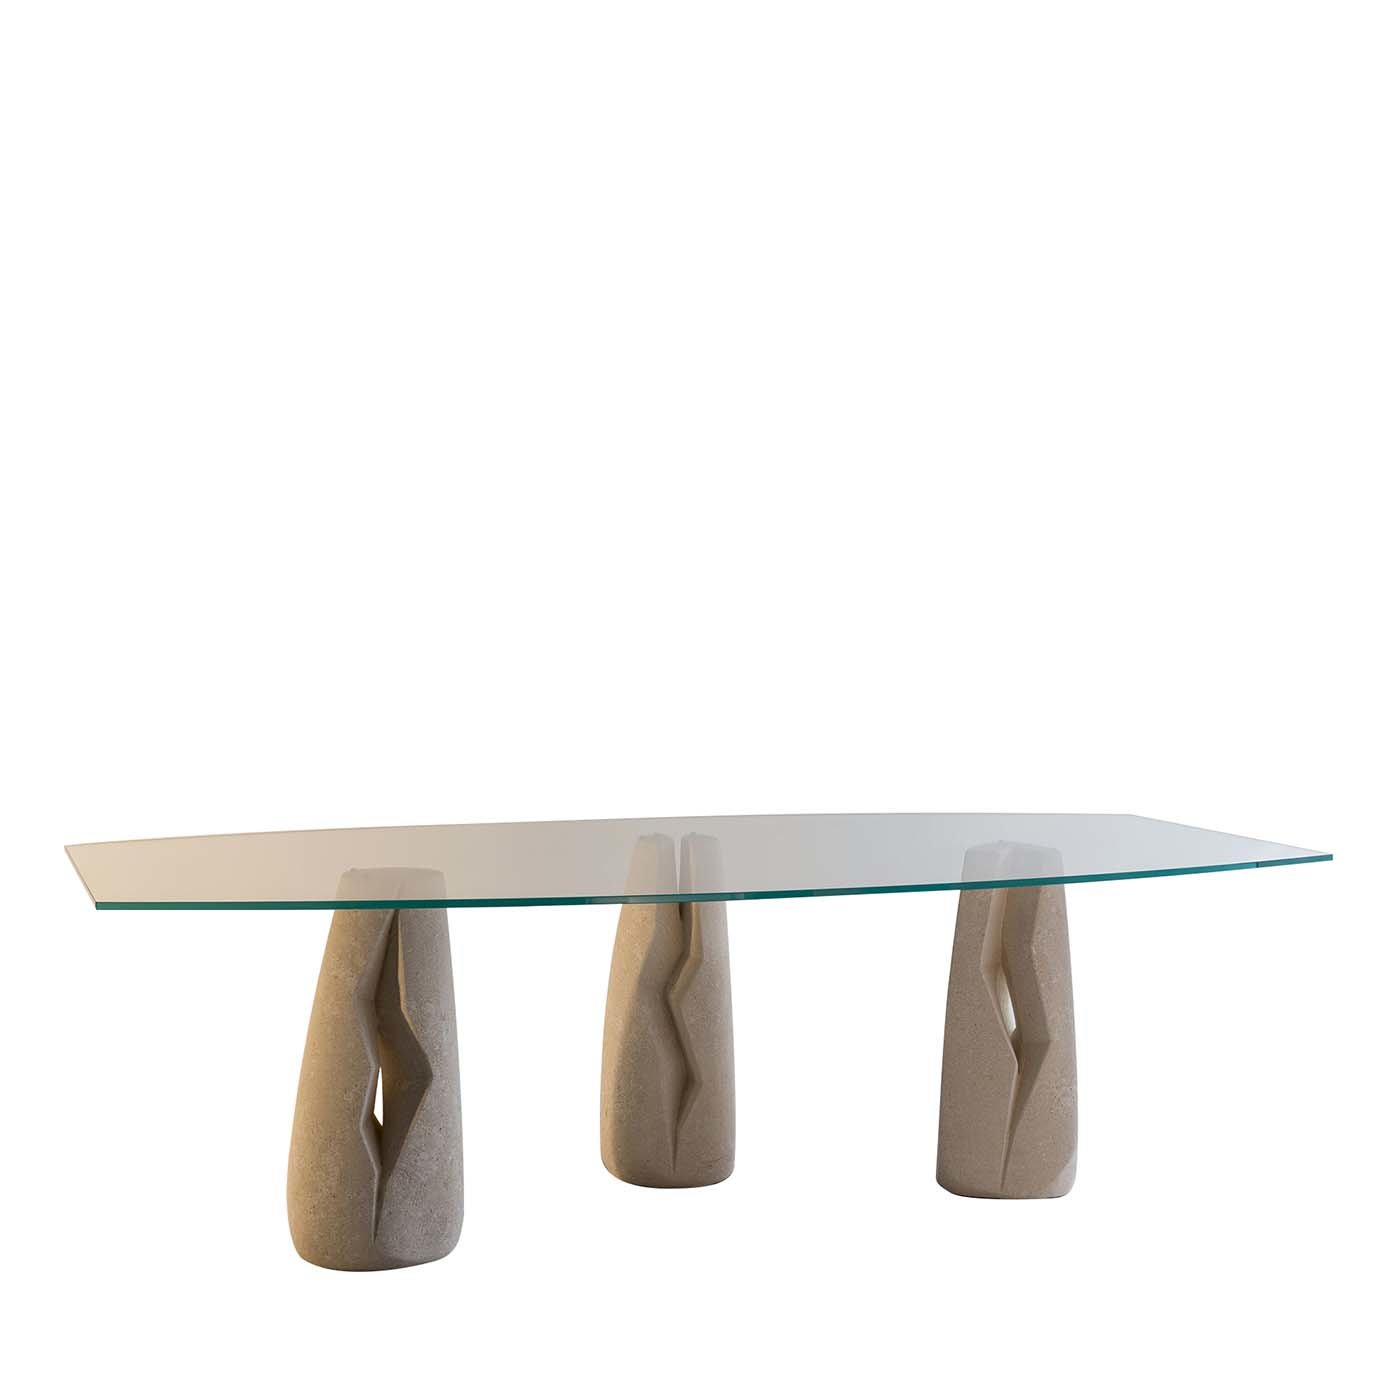 Magdalena Table by Cristina Cicero - Main view